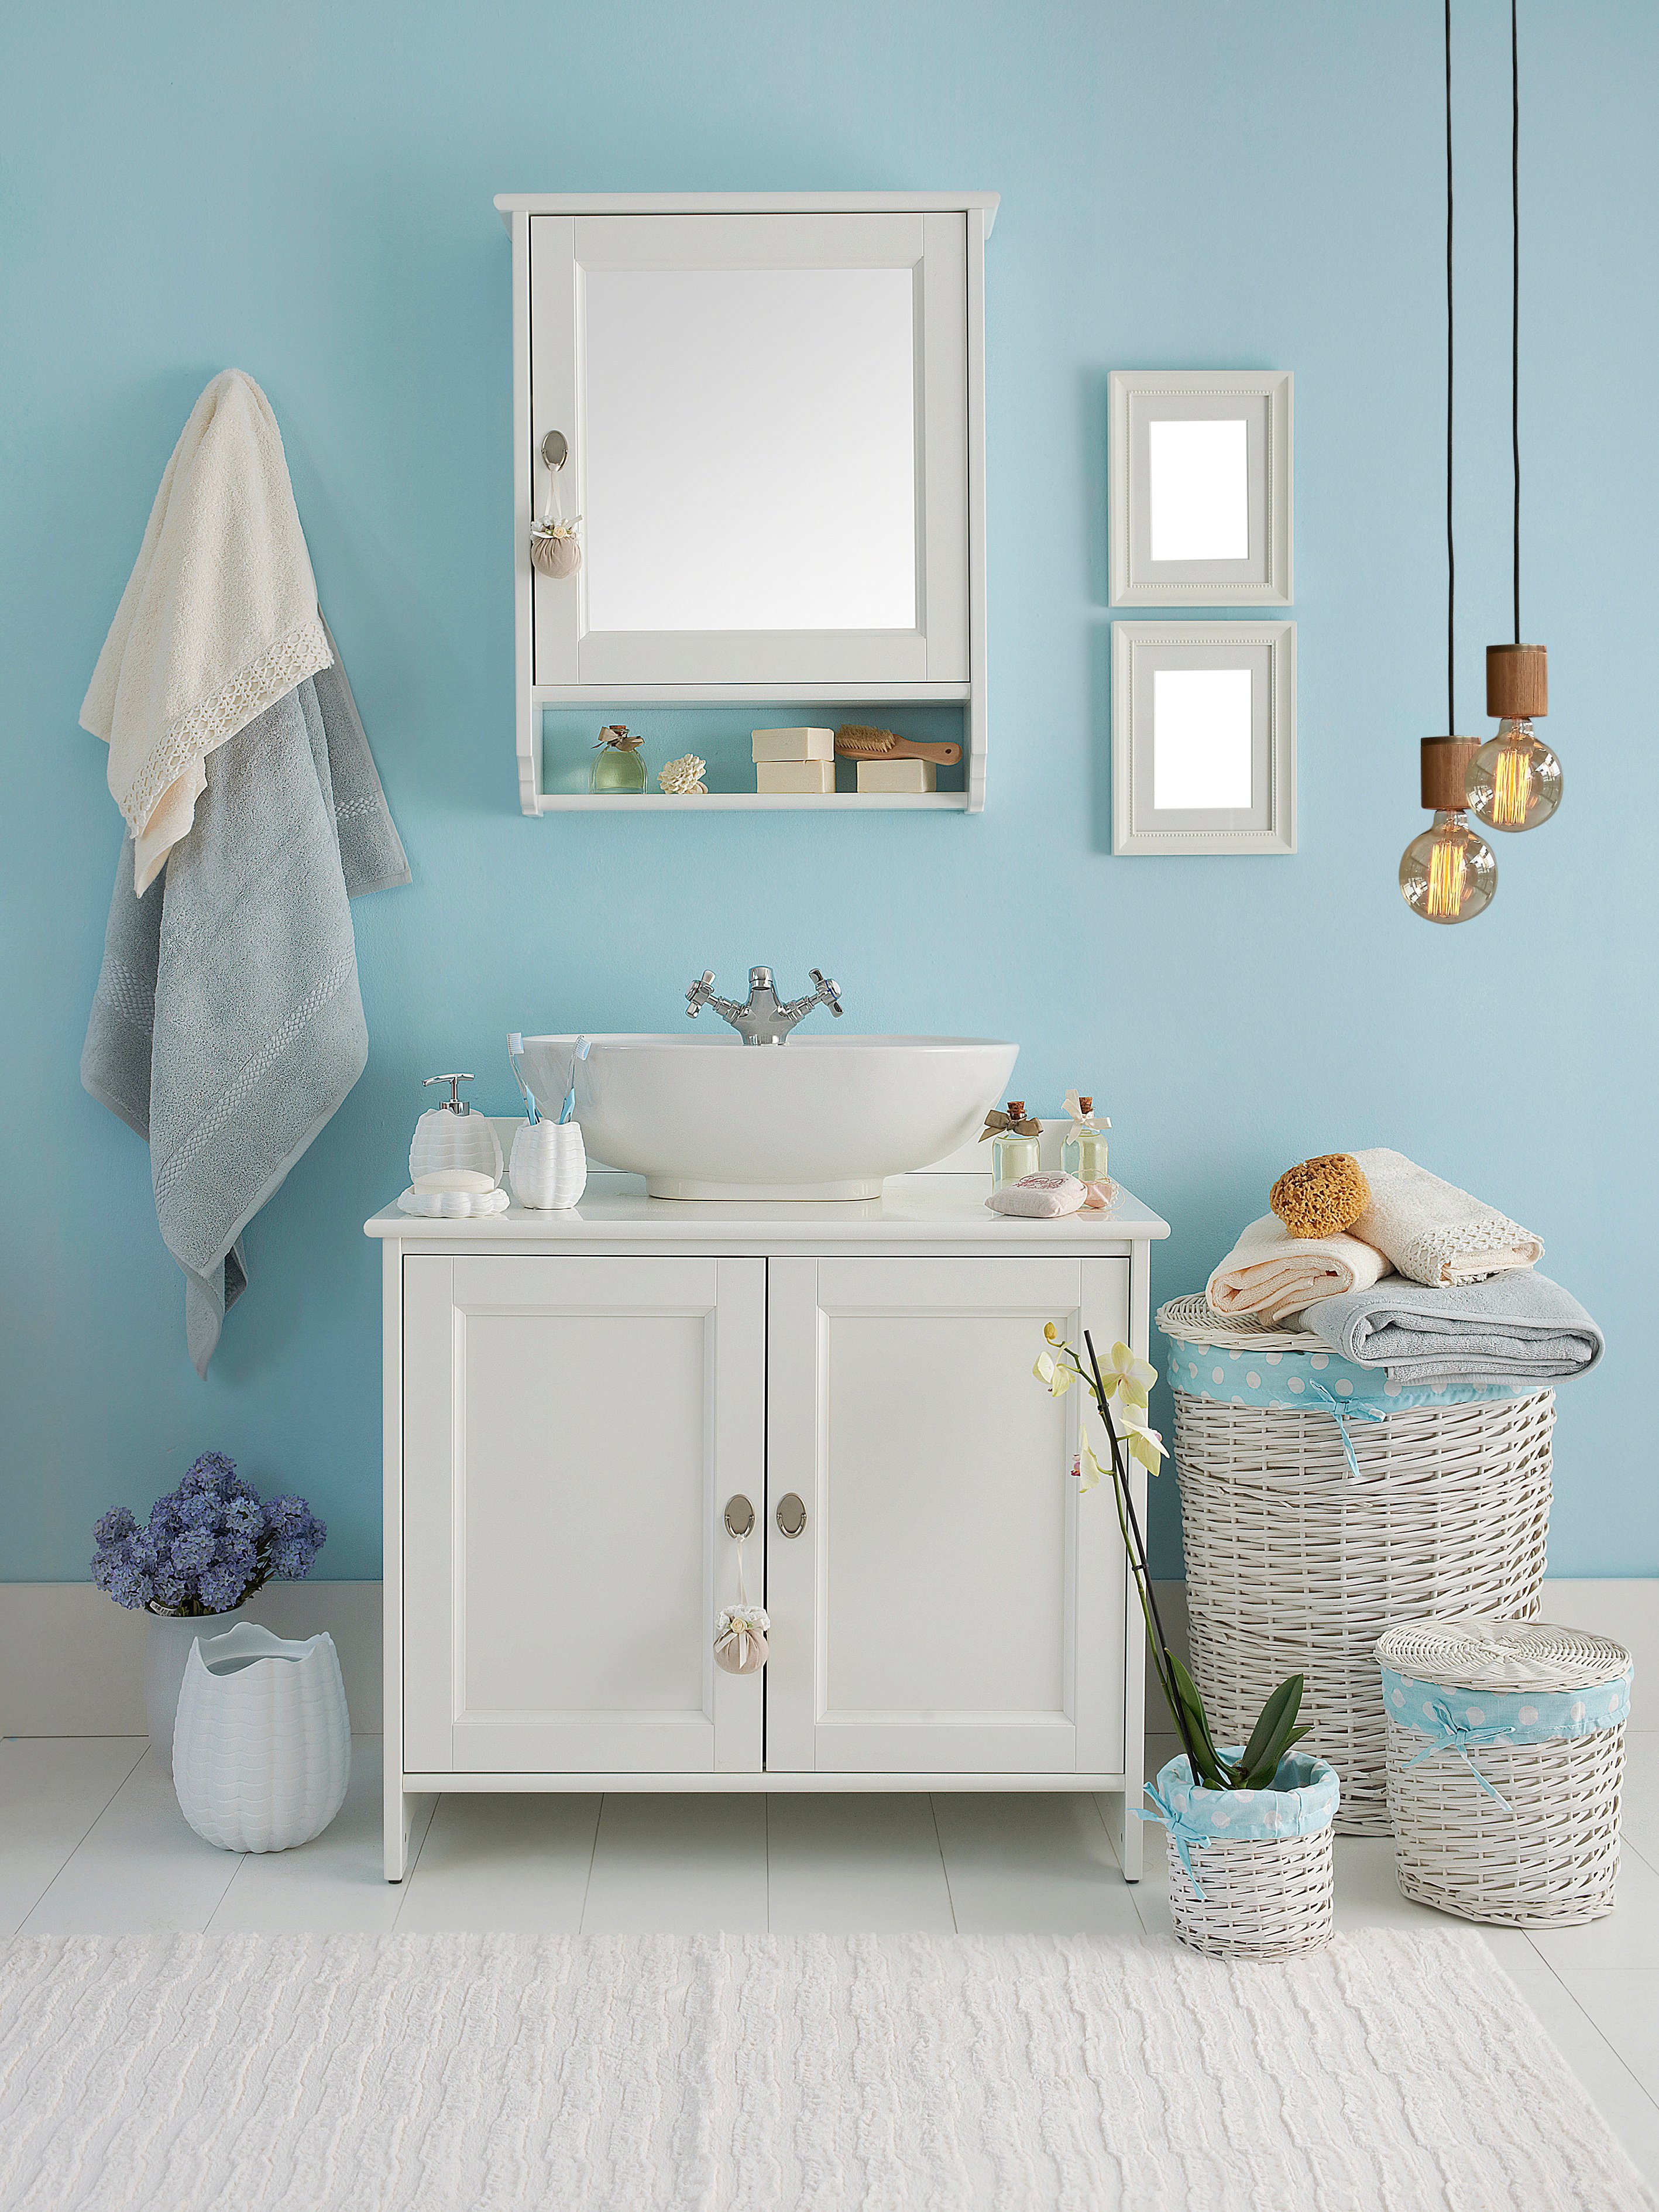 Eine Unterschrank eines Waschbeckens und der passende Wandspiegel sind an einer blauen Badezimmerwand angebracht. Links und Rechts sind mehrere Deko- Elemente.